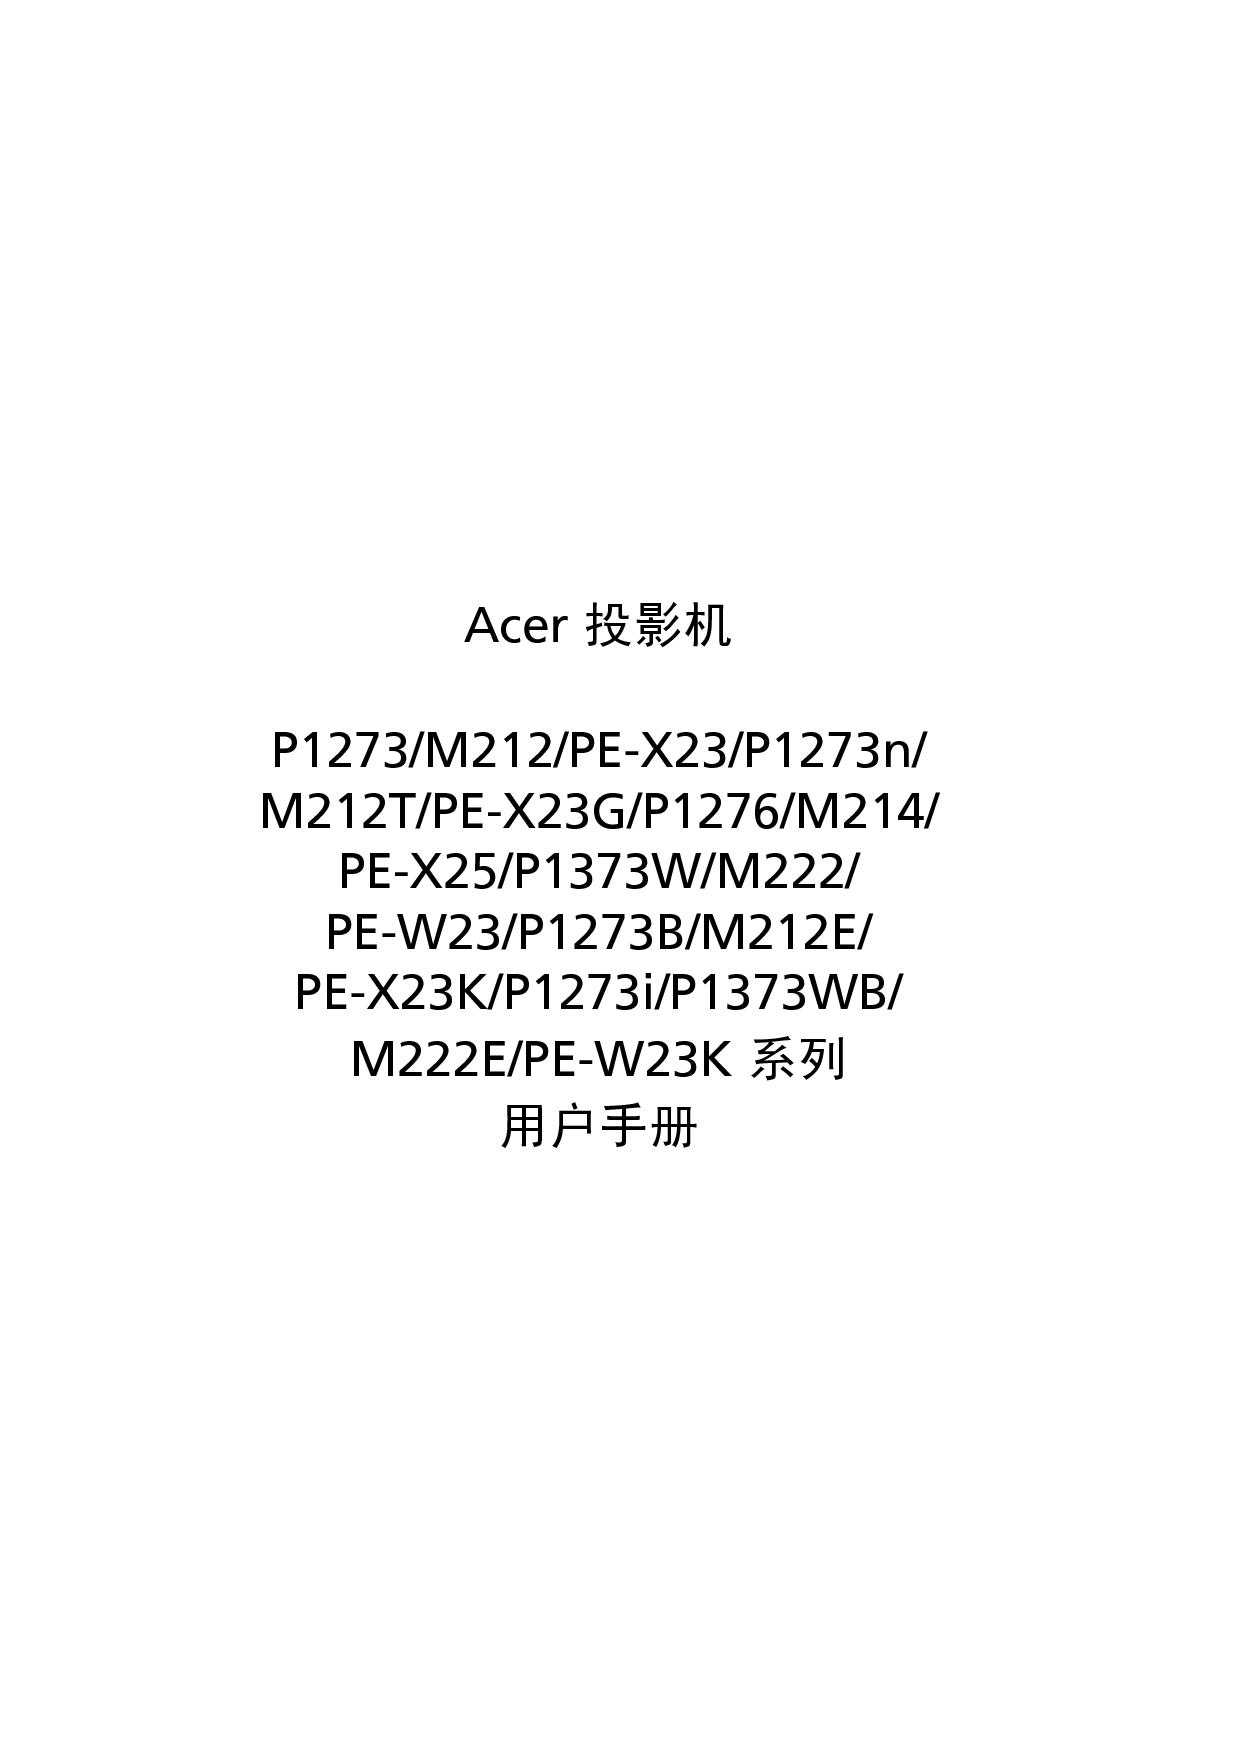 宏碁 Acer M212, P1273, PE-W23 用户指南 封面